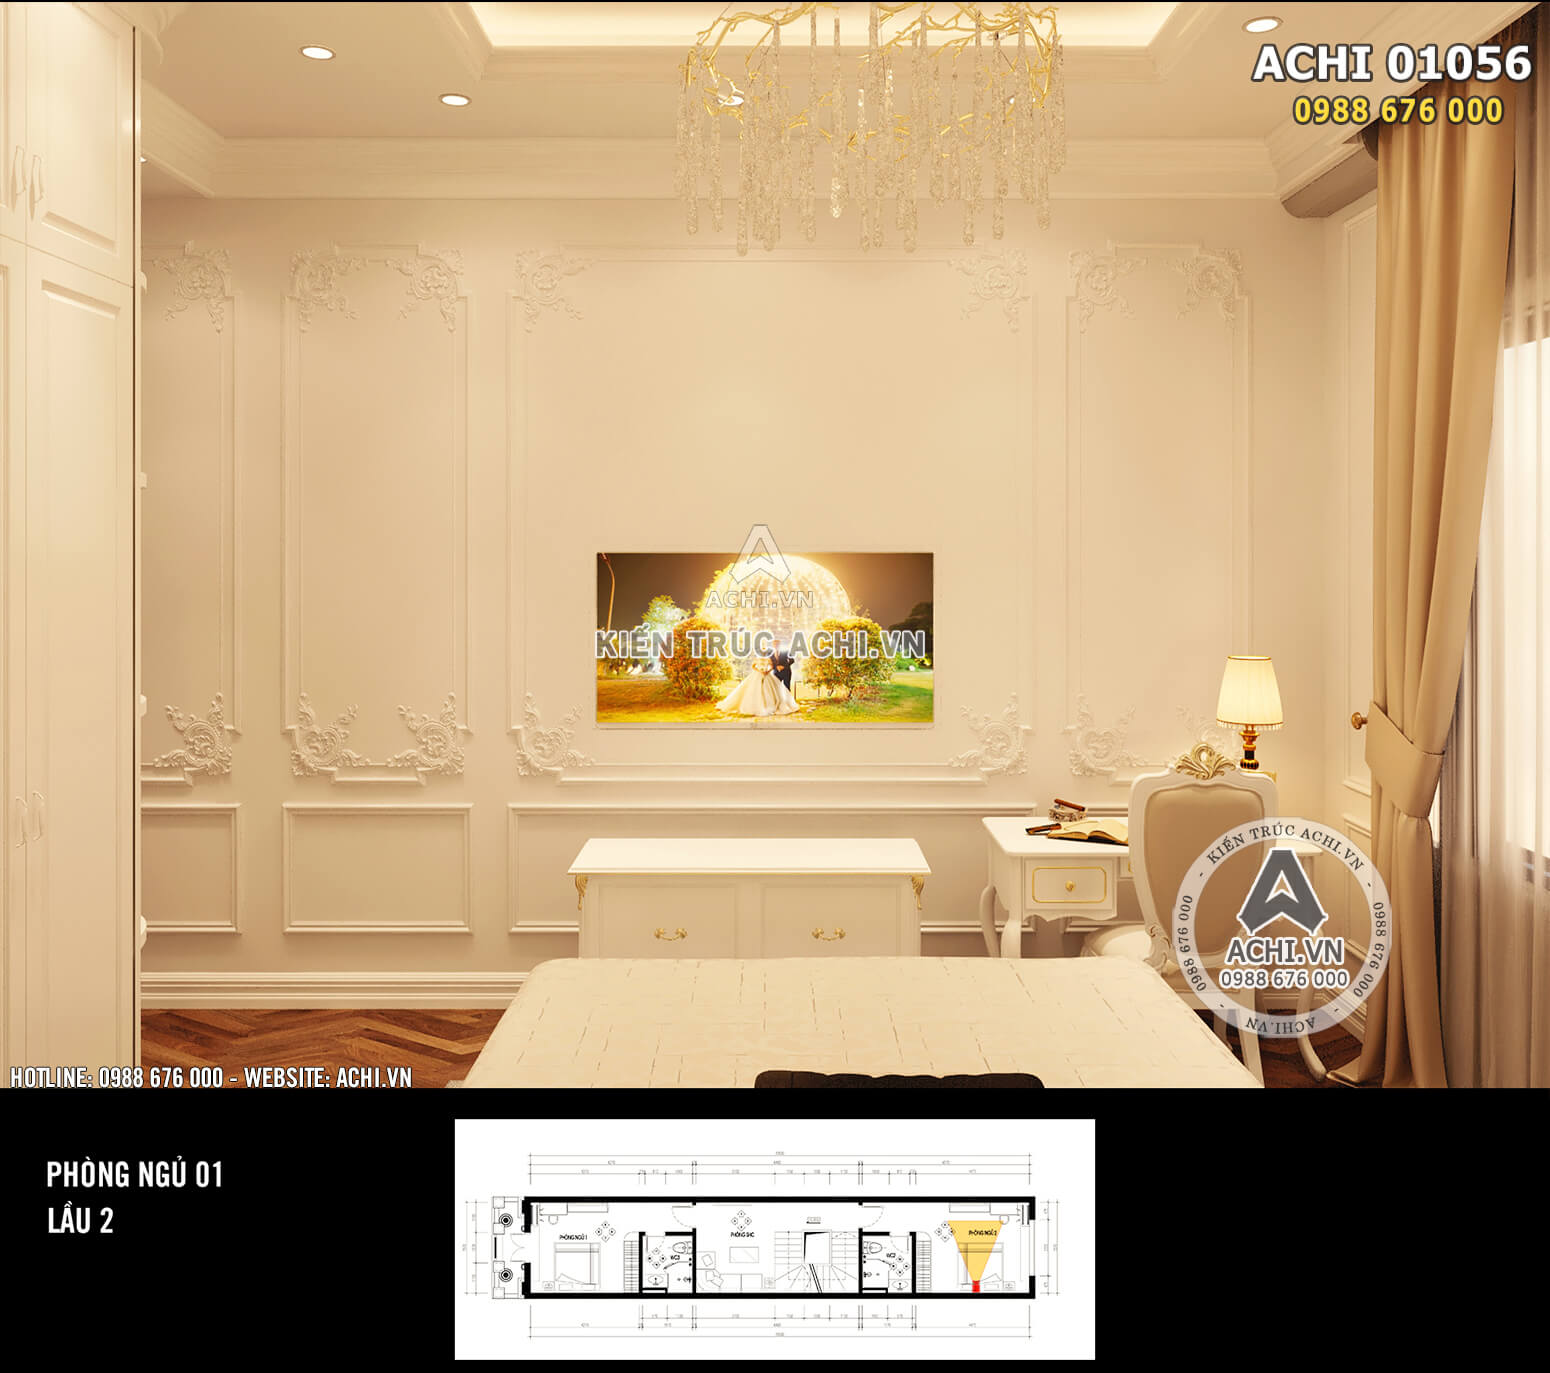 Hình ảnh: Thiết kế nội thất nhà phố tân cổ điển - Khu vực phòng ngủ khép kín 1 - Lầu 2